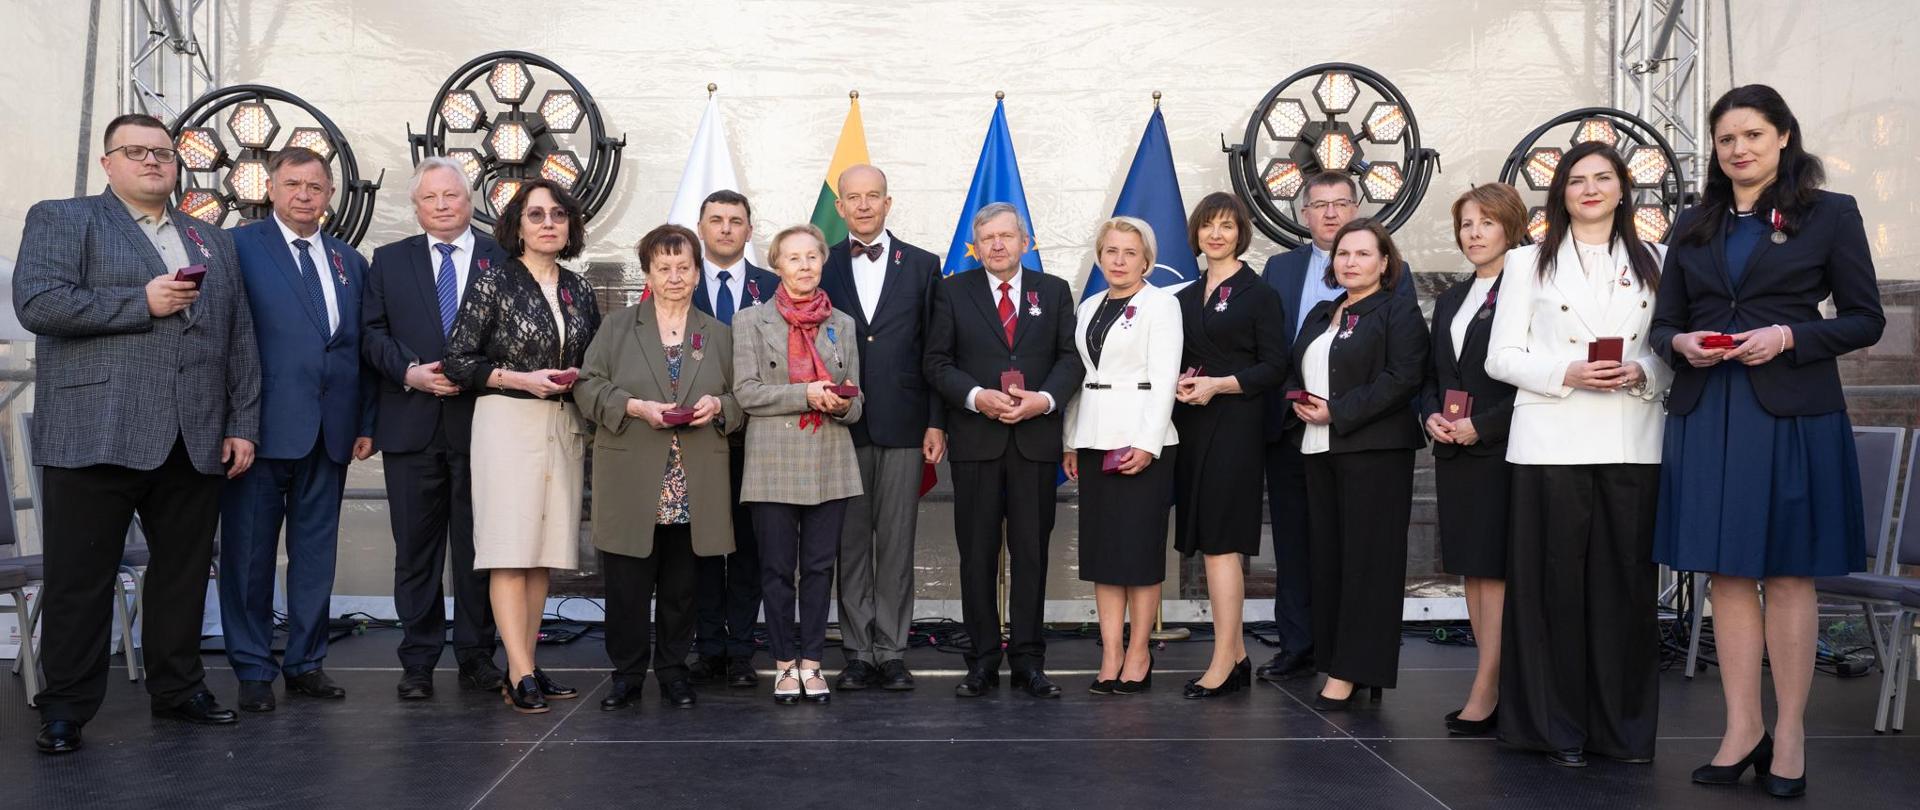 Osoby zasłużone dla rozwoju współpracy polsko-litewskiej oraz za zasługi w działalności na rzecz społeczności polskiej na Litwie uhonorowane odznaczeniami państwowymi